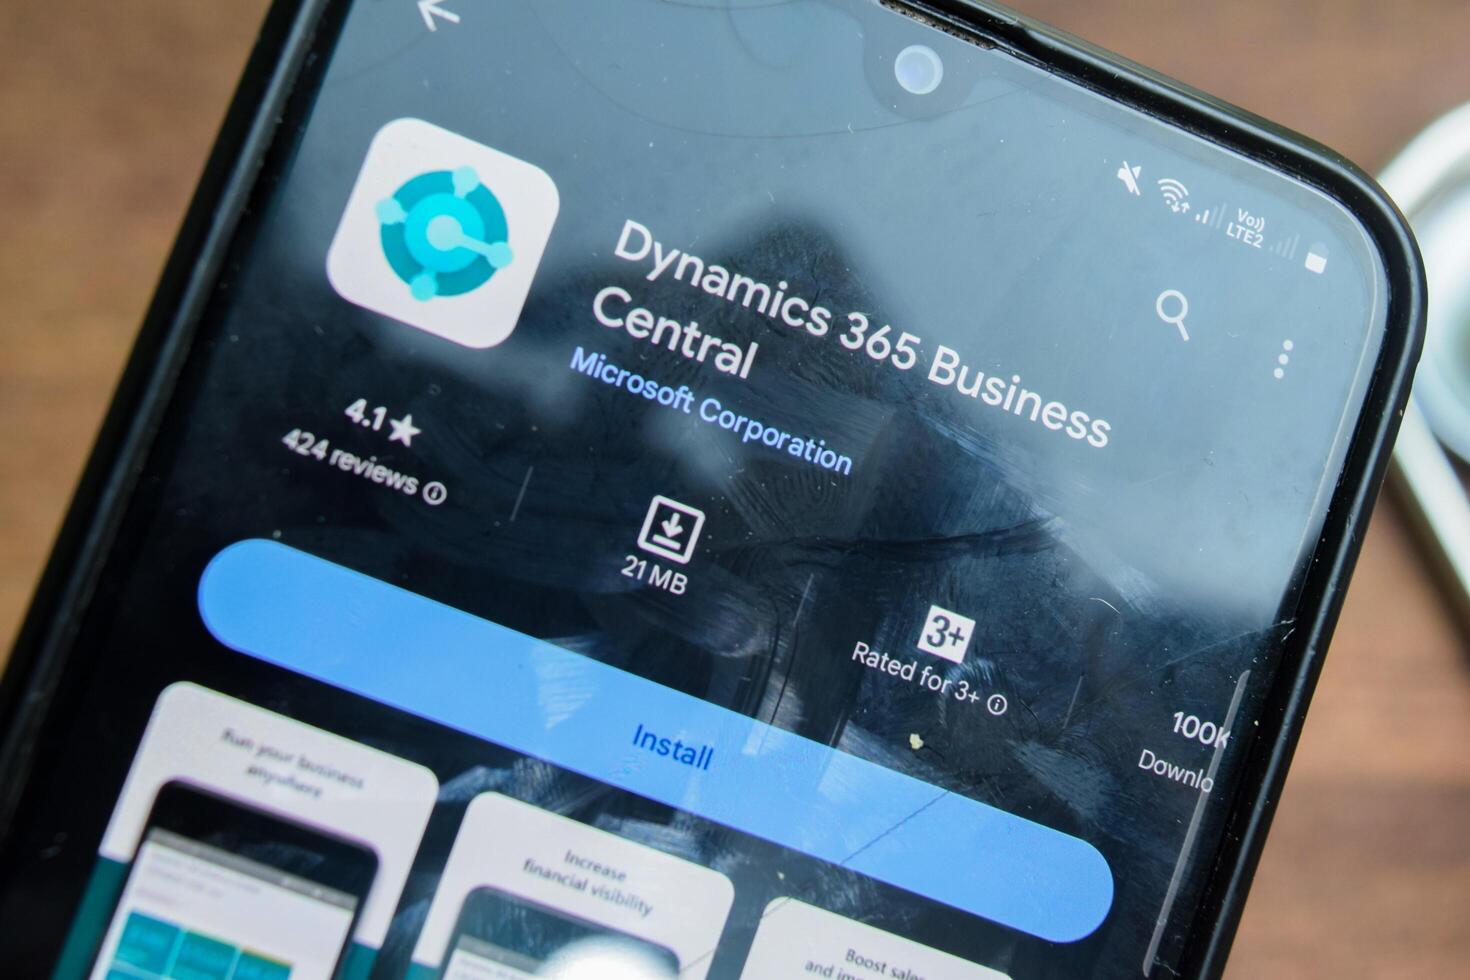 dinámica 365 negocio central solicitud en teléfono inteligente pantalla. dinámica 365 es un freeware web navegador desarrollado por microsoft corporación. bekasi, Indonesia, febrero 21, 2024 foto